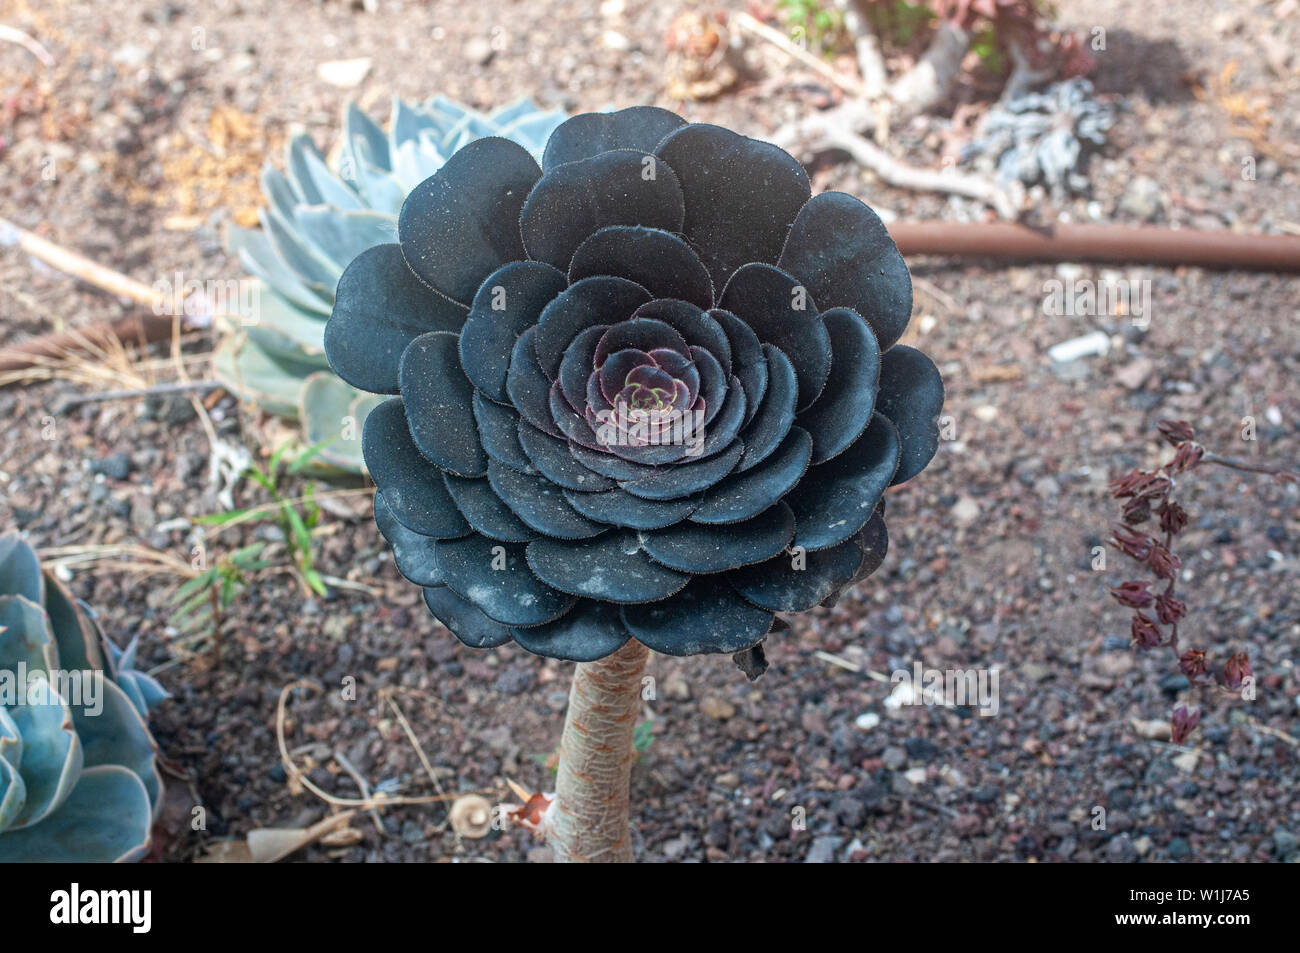 Rosa Negra - Aeonium arboreum Zwartkop '' en un jardín de cactus y  suculentas fotografiado en Tel Aviv, Israel en mayo Fotografía de stock -  Alamy